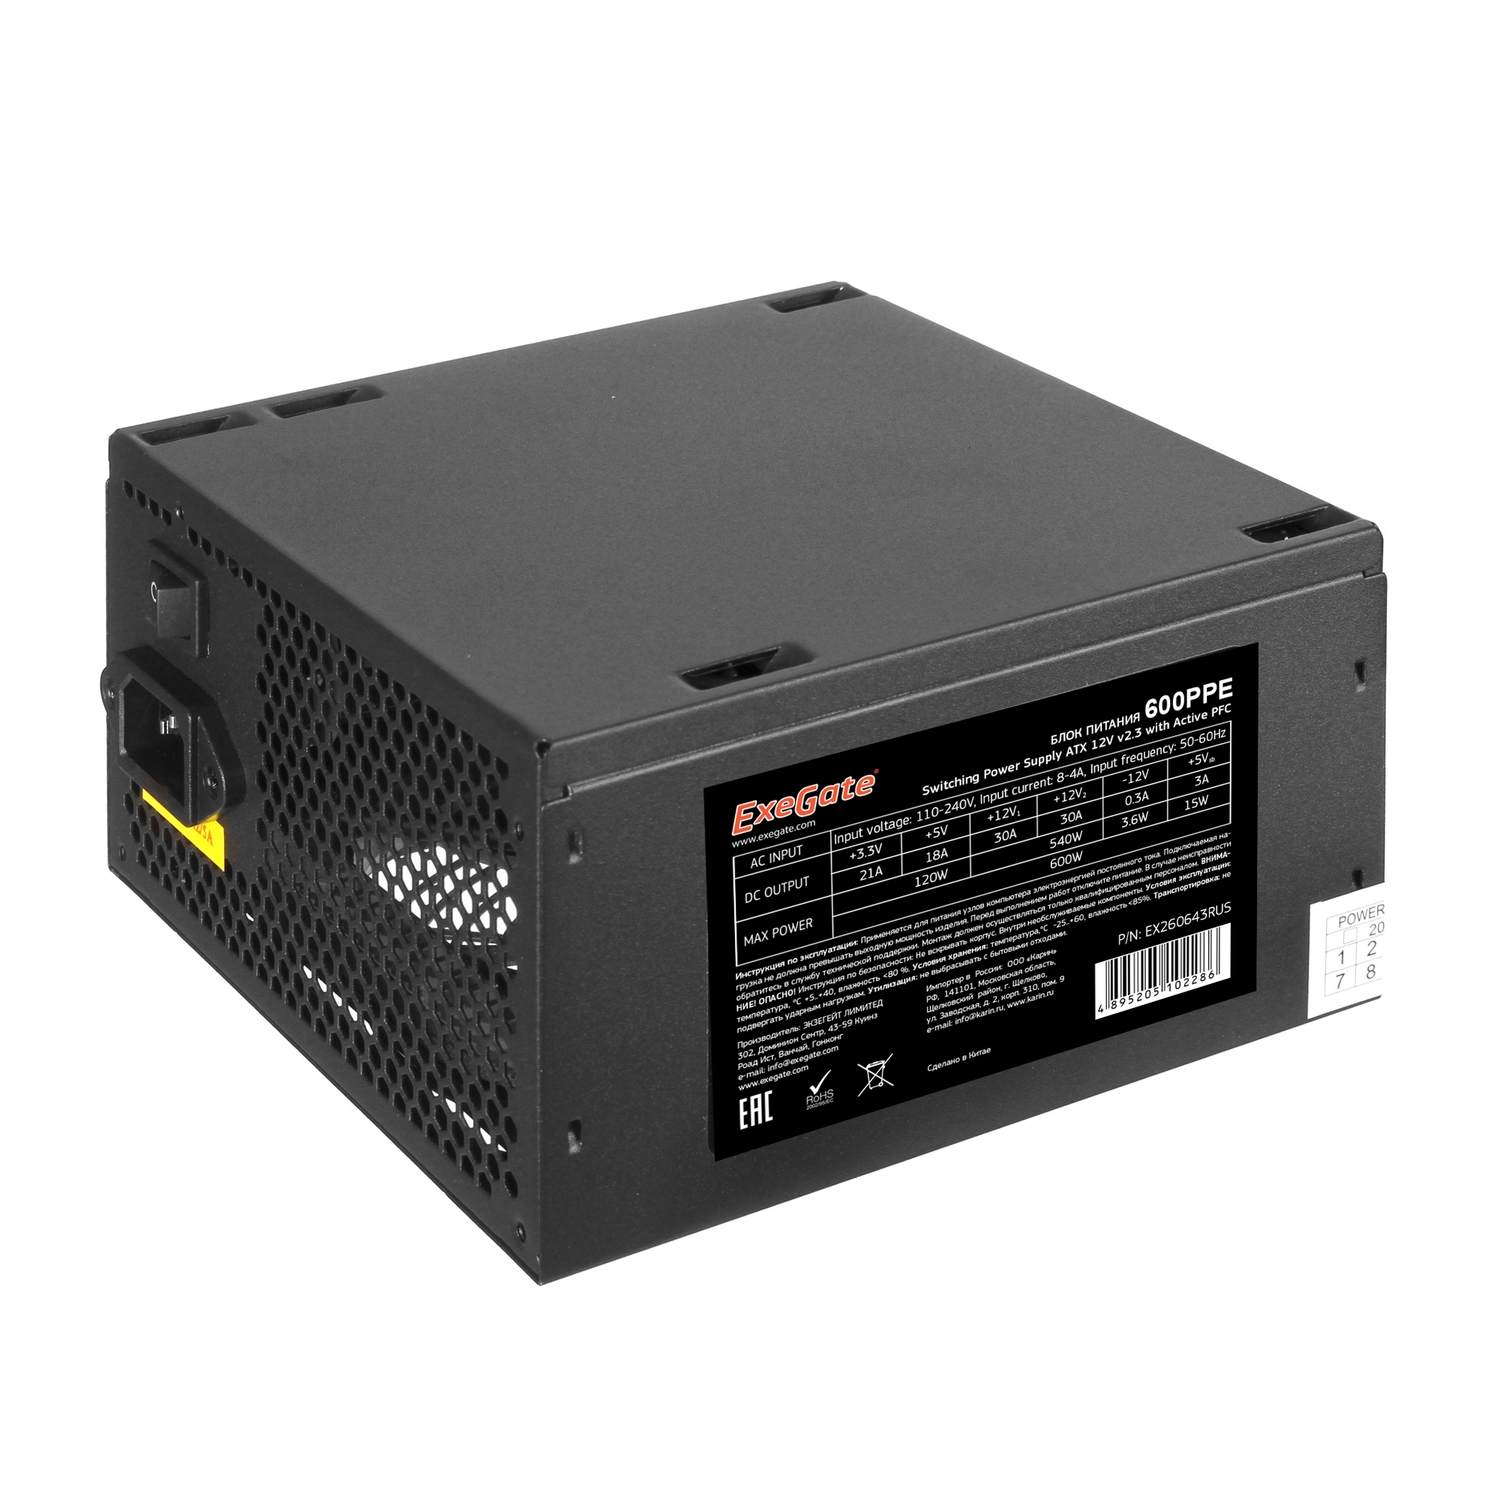 Блок питания ExeGate 600W ATX-600PPE (EX260643RUS-S) Black цена и фото